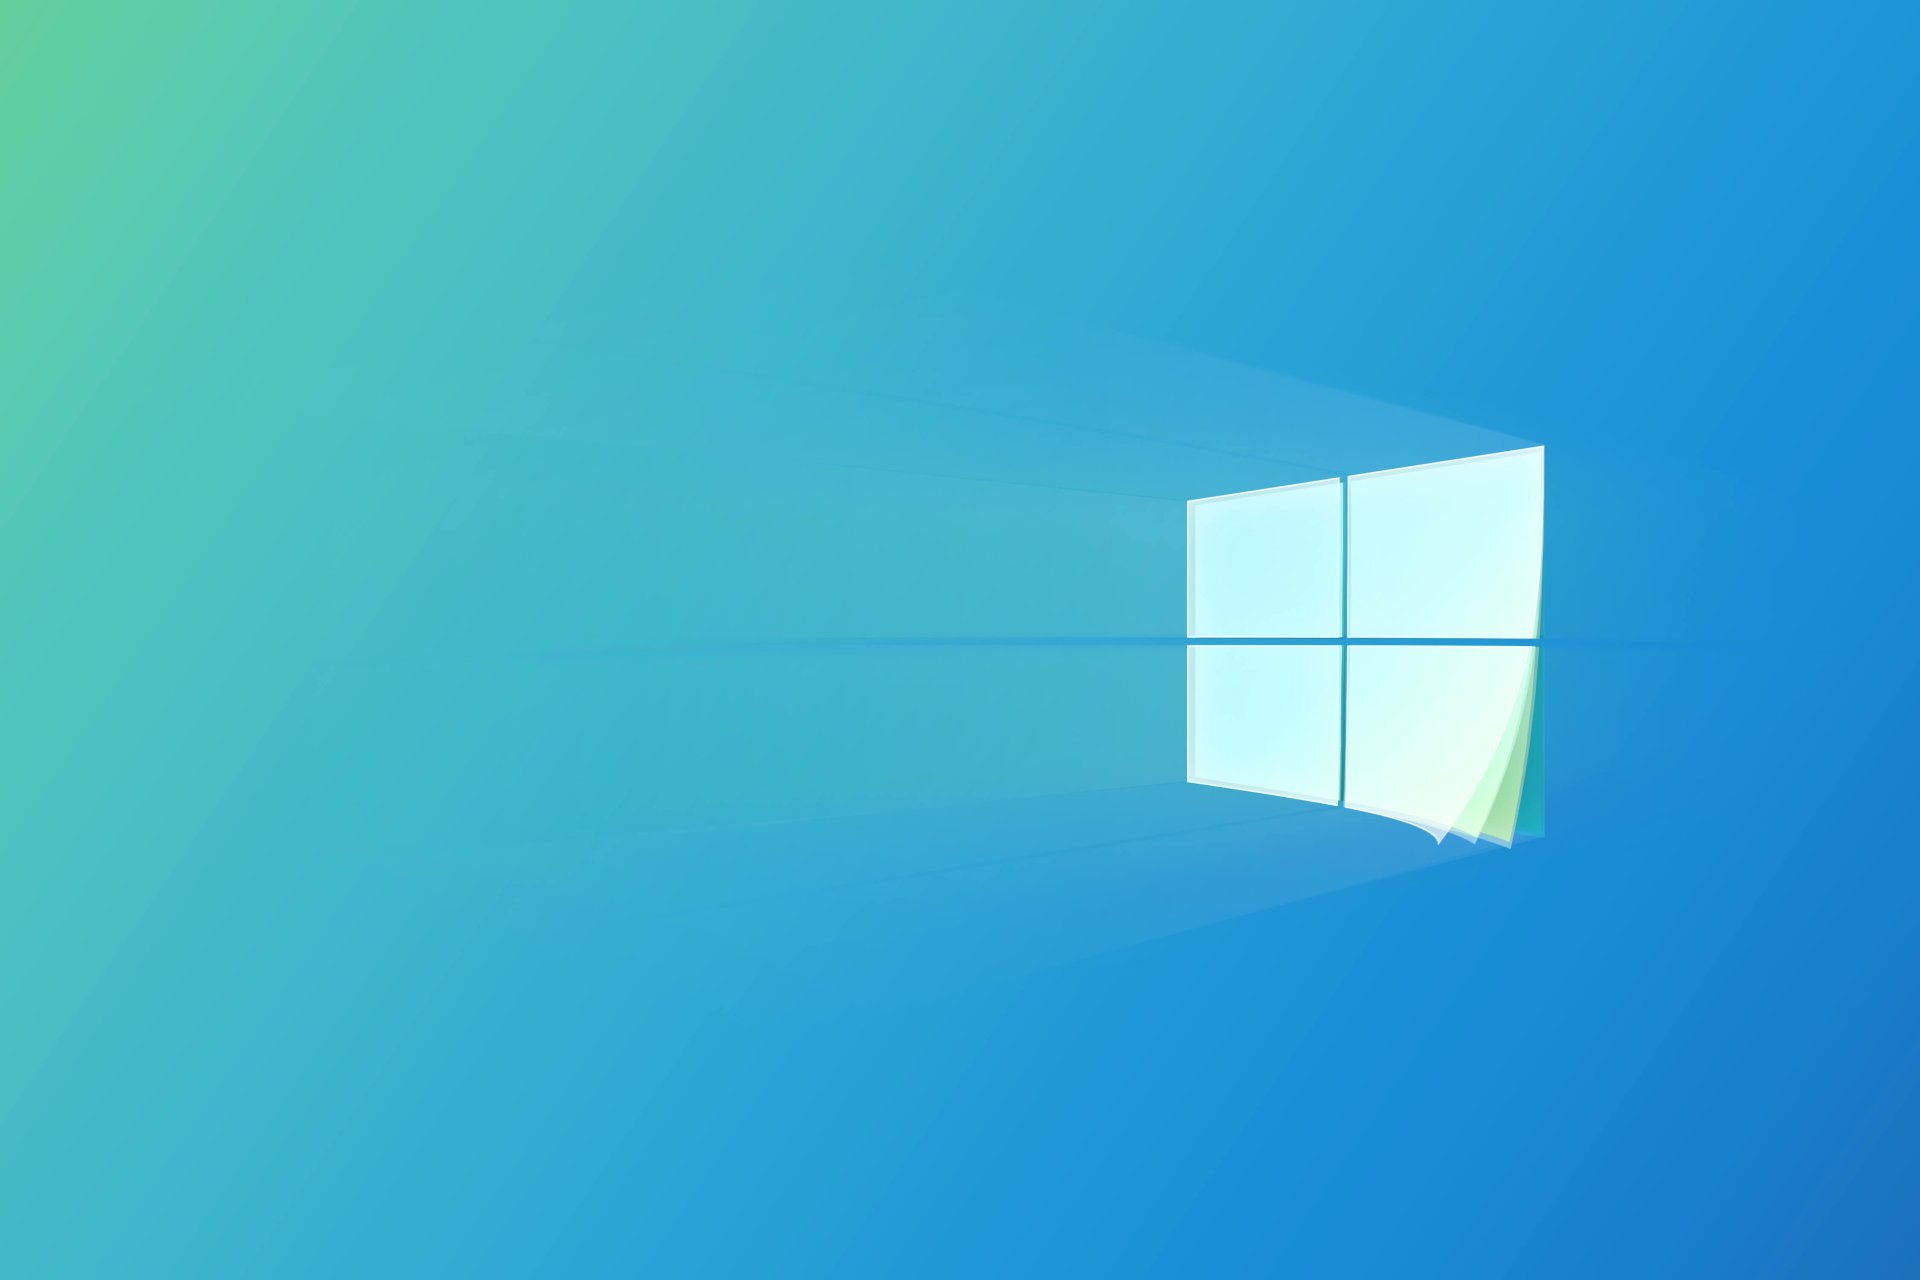 Windows 10 Logo - Với biểu tượng độc đáo này, Windows 10 mang đến sự đột phá và hiện đại trong công nghệ, thể hiện bản sắc riêng của hệ điều hành này. Hãy khám phá logo Windows 10 và cùng trải nghiệm sự tiên tiến và nổi bật của nó.